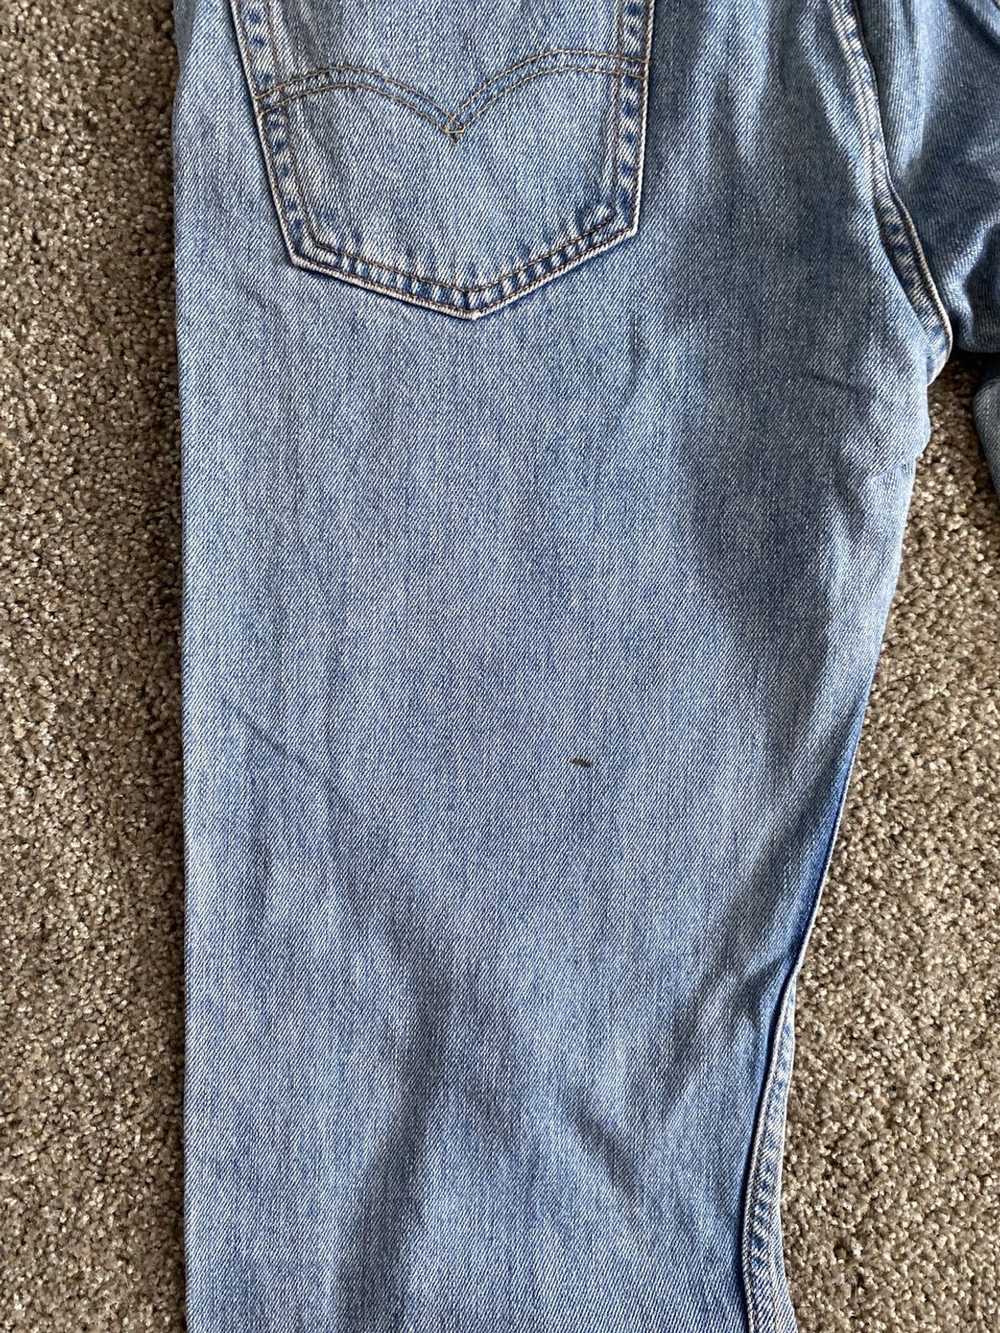 Levi's × Vintage Vintage Levis 505 jeans - image 2